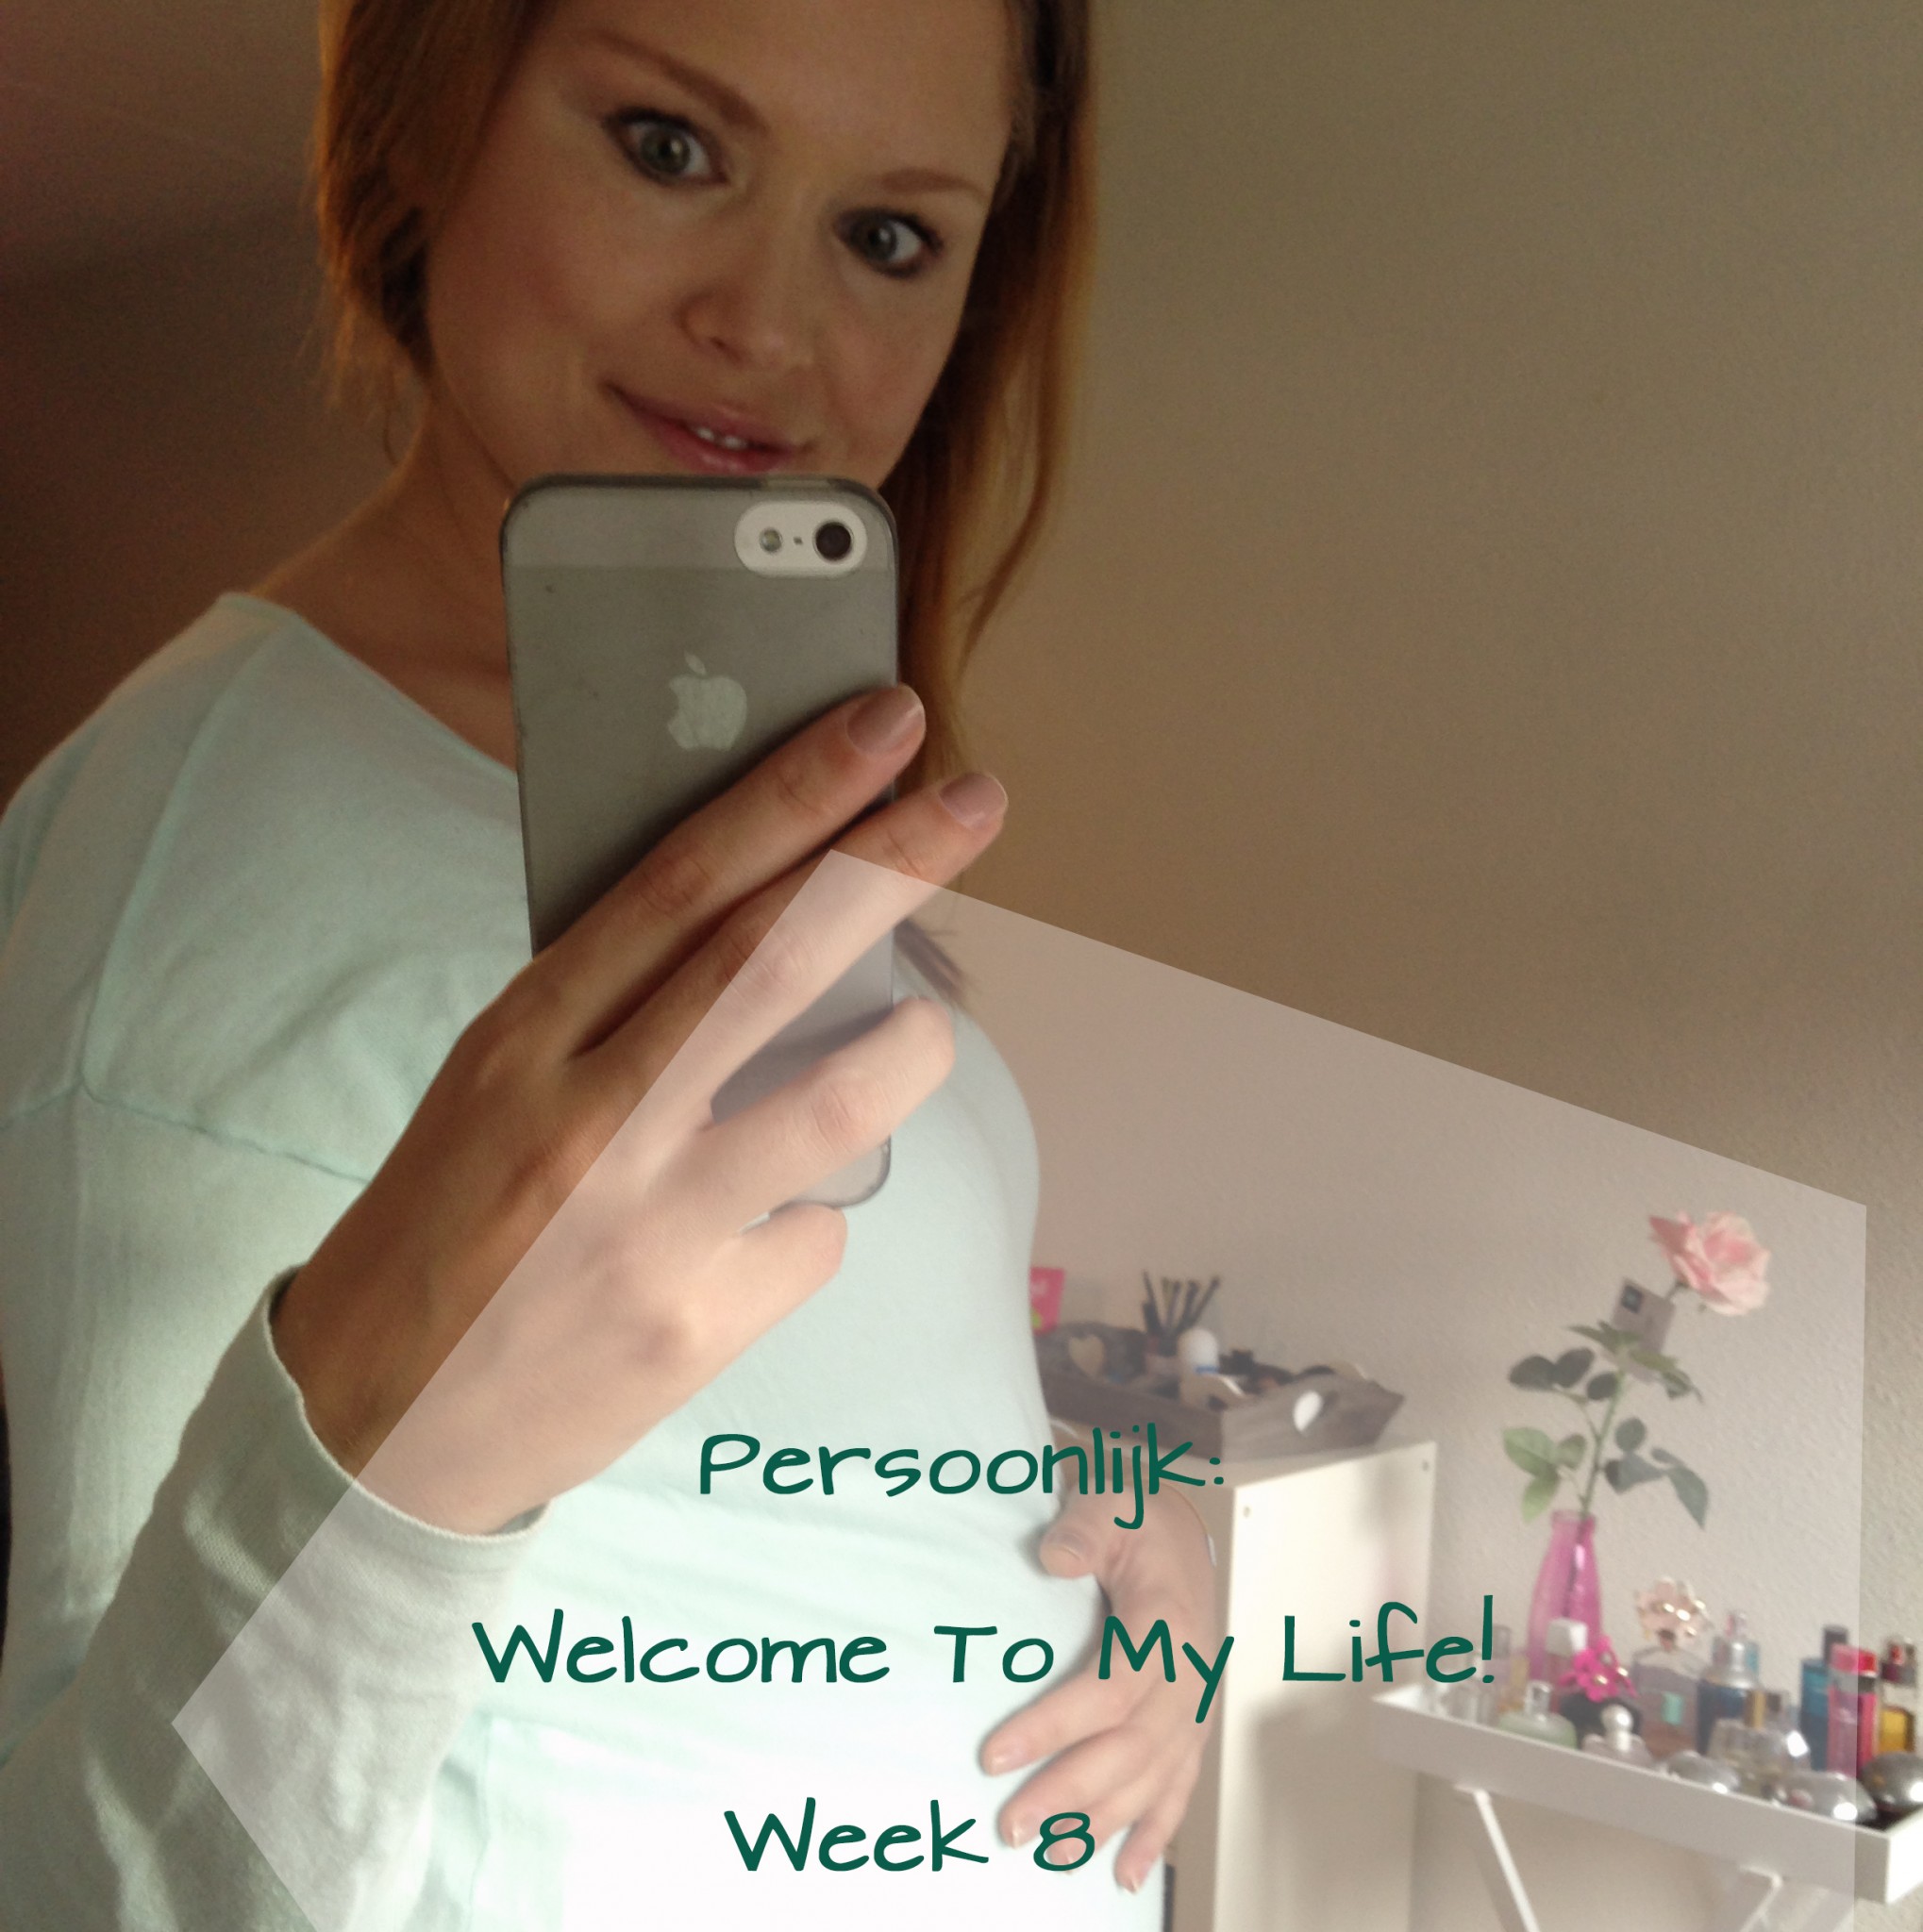 Persoonlijk: Welcome To My life! (week 8)